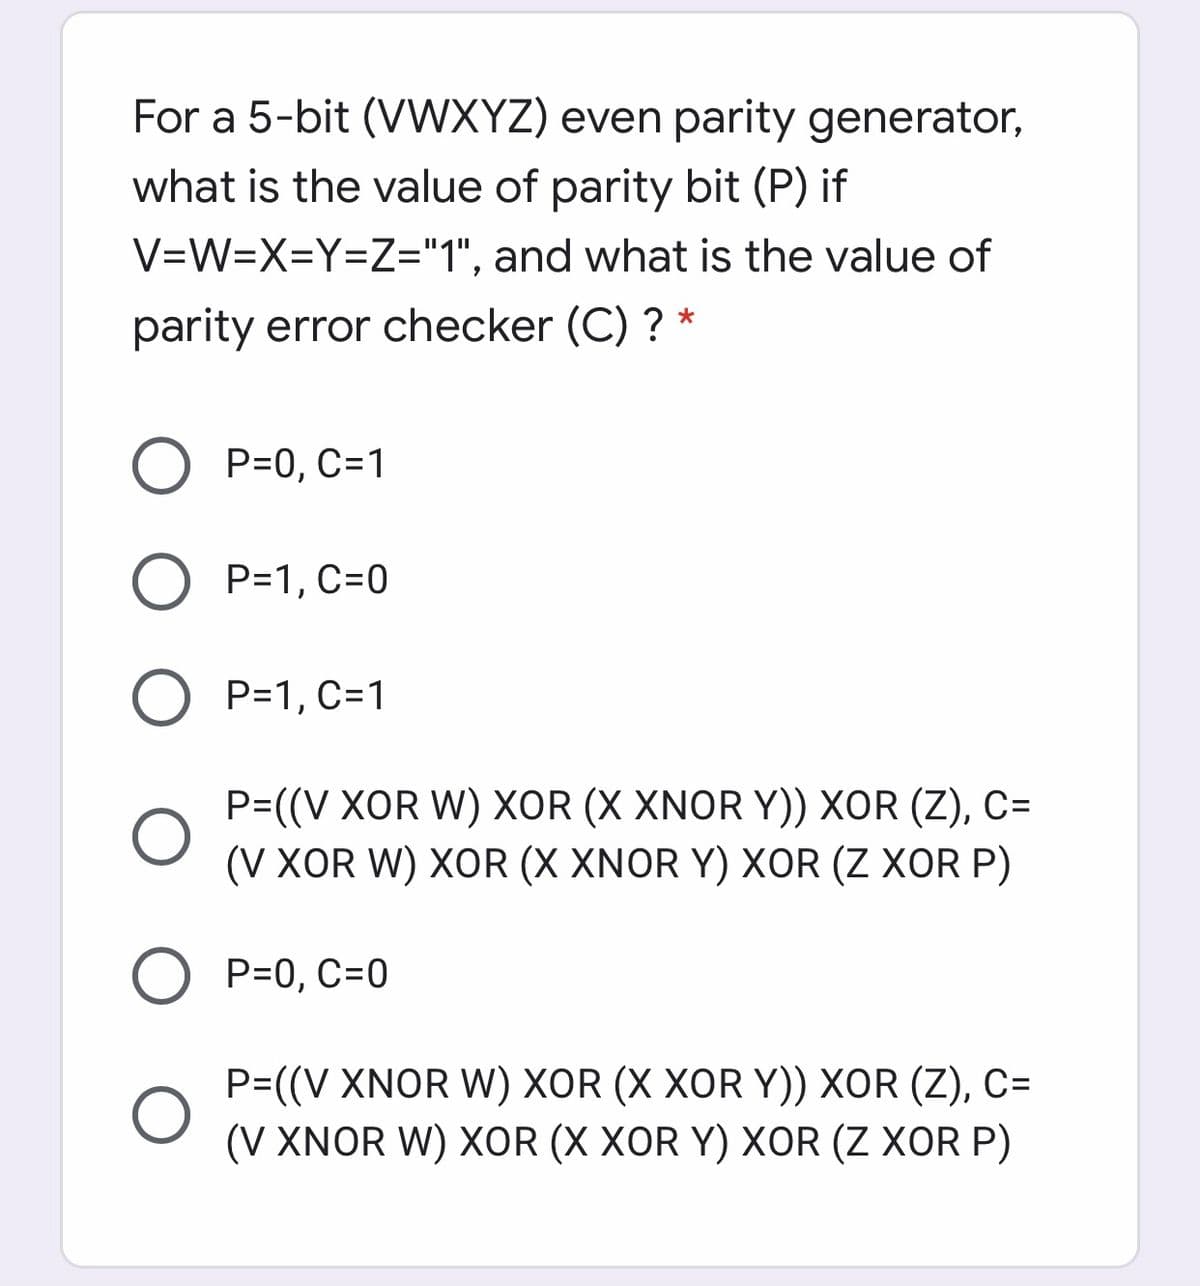 For a 5-bit (VWXYZ) even parity generator,
what is the value of parity bit (P) if
V=W=X=Y=Z="1", and what is the value of
parity error checker (C) ? *
P=0, C=1
P=1, C=0
P=1, C=1
P=((V XOR W) XOR (X XNOR Y)) XOR (Z), C=
(V XOR W) XOR (X XNOR Y) XOR (Z XOR P)
P=0, C=0
P=((V XNOR W) XOR (X XOR Y)) XOR (Z), C=
(V XNOR W) XOR (X XOR Y) XOR (Z XOR P)
